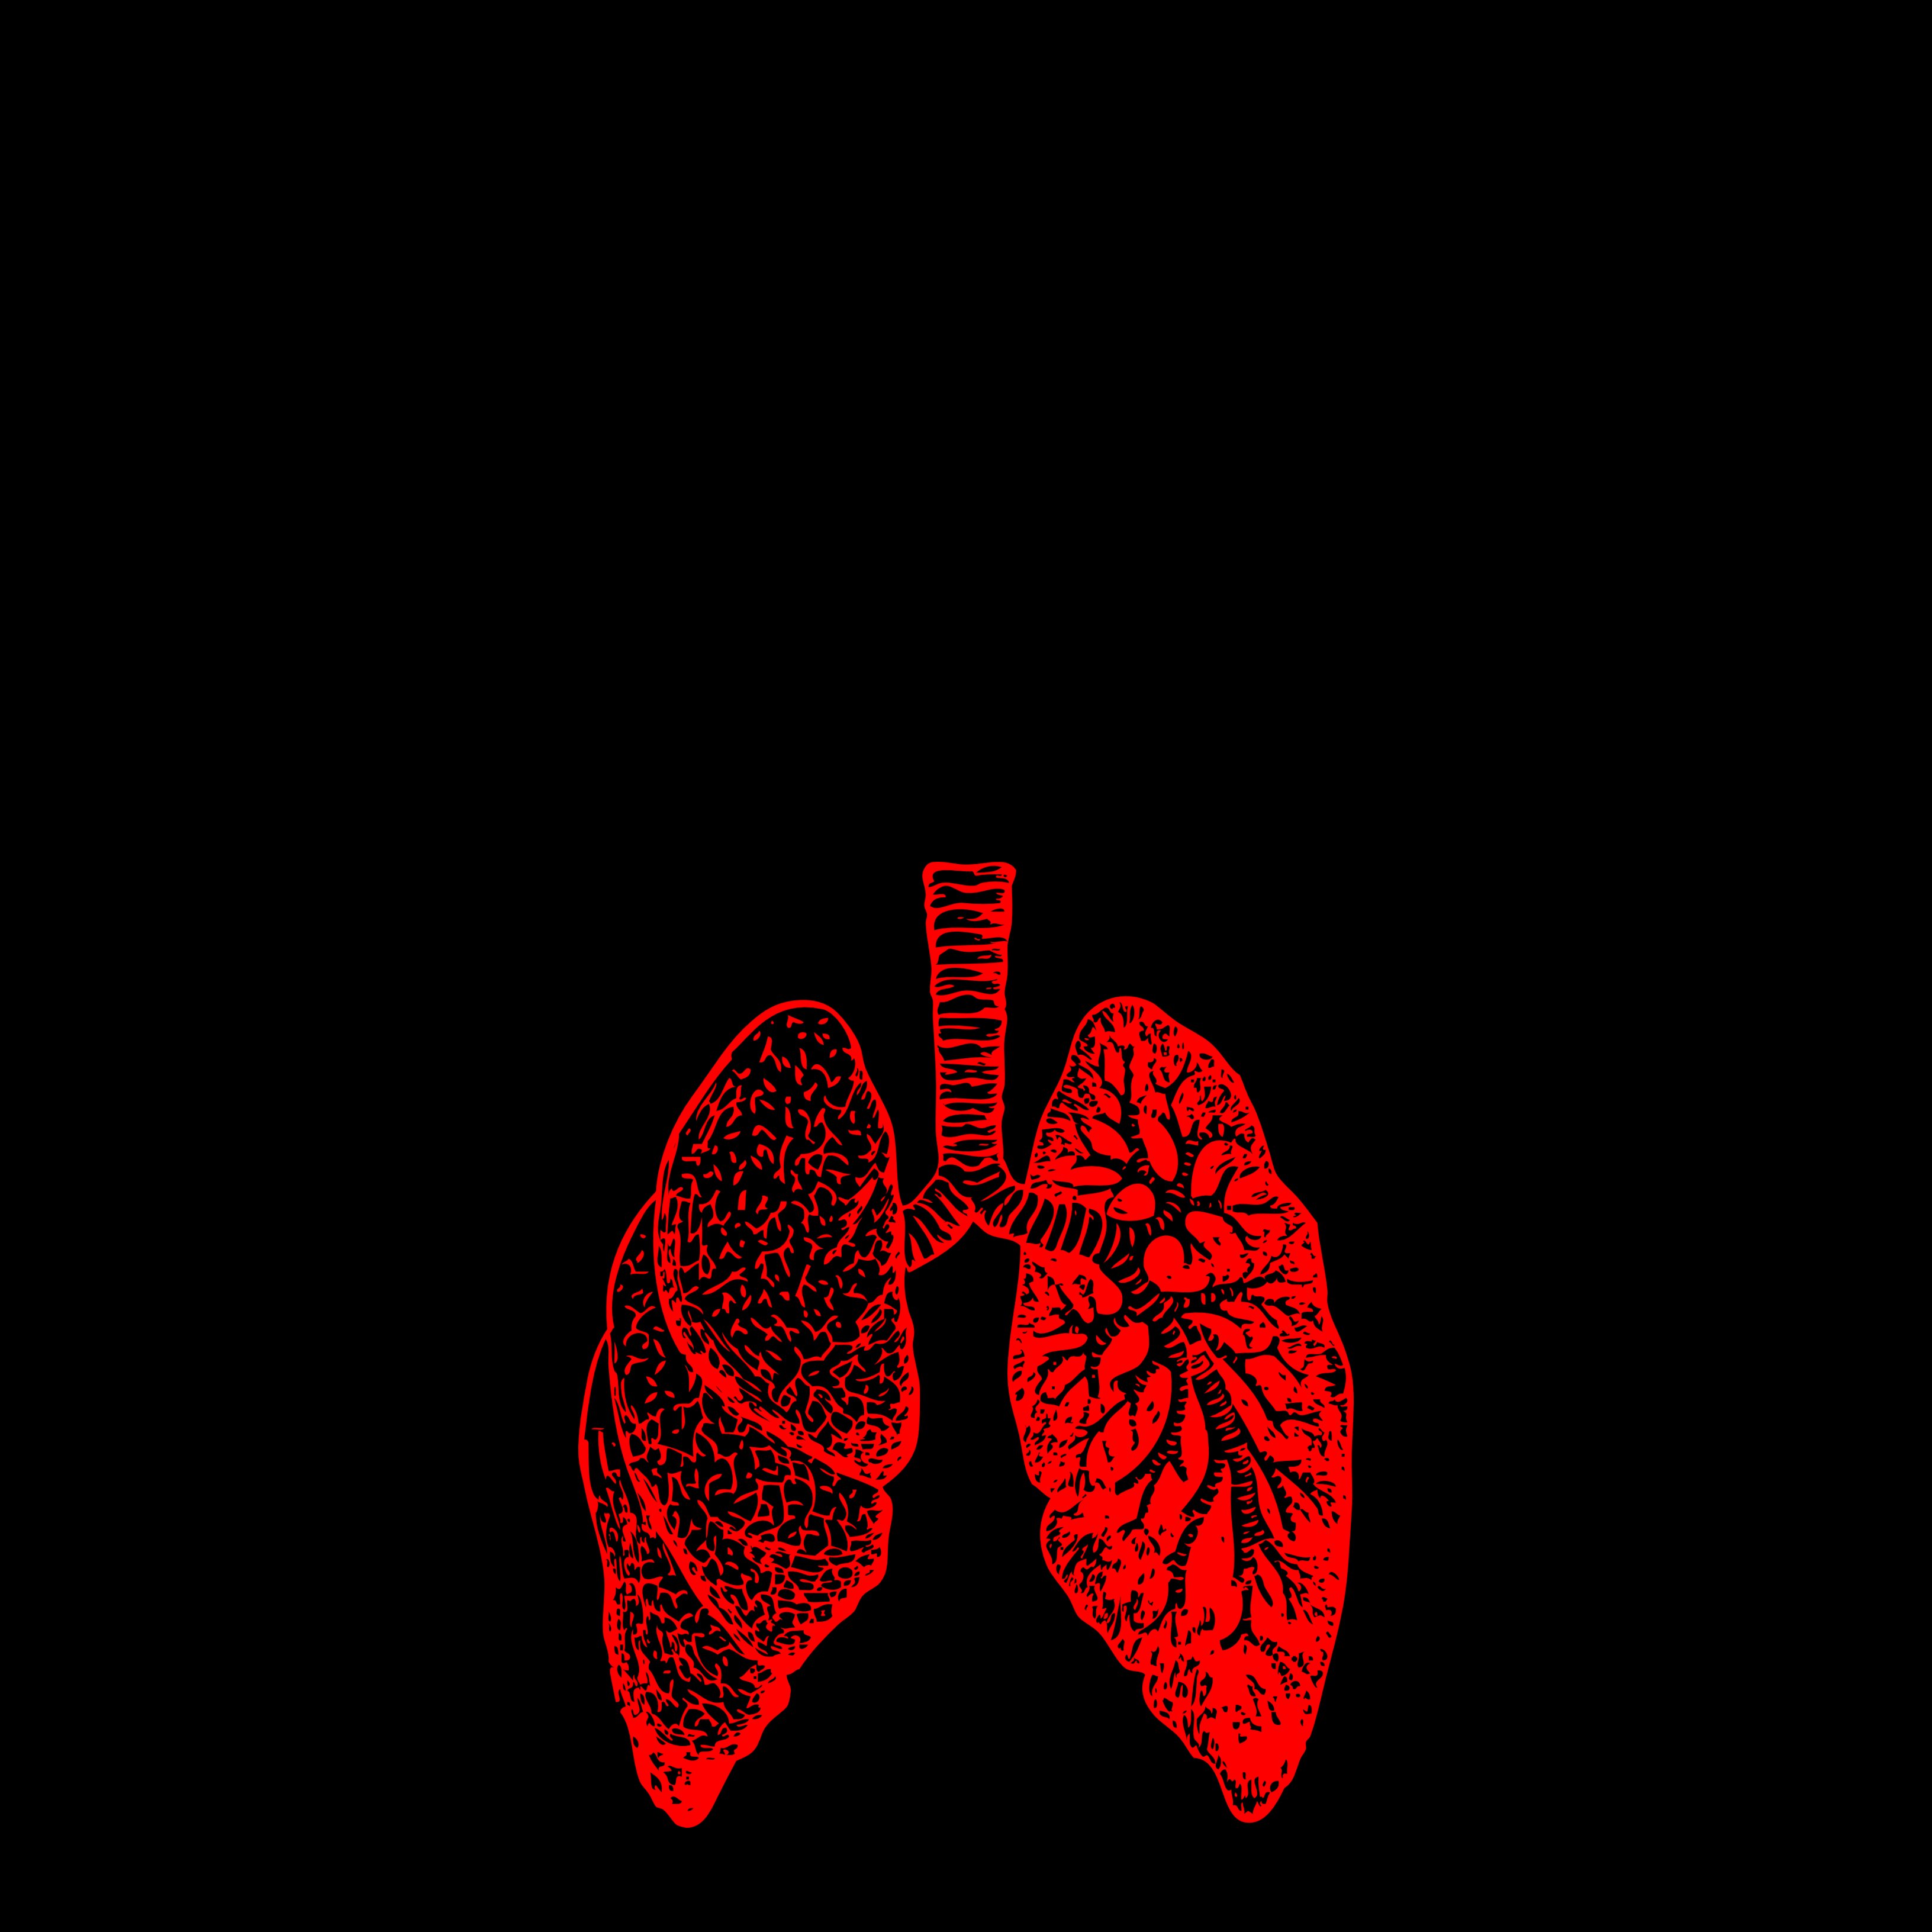 El càncer de pulmó i bronquis, el més mortal el 2020